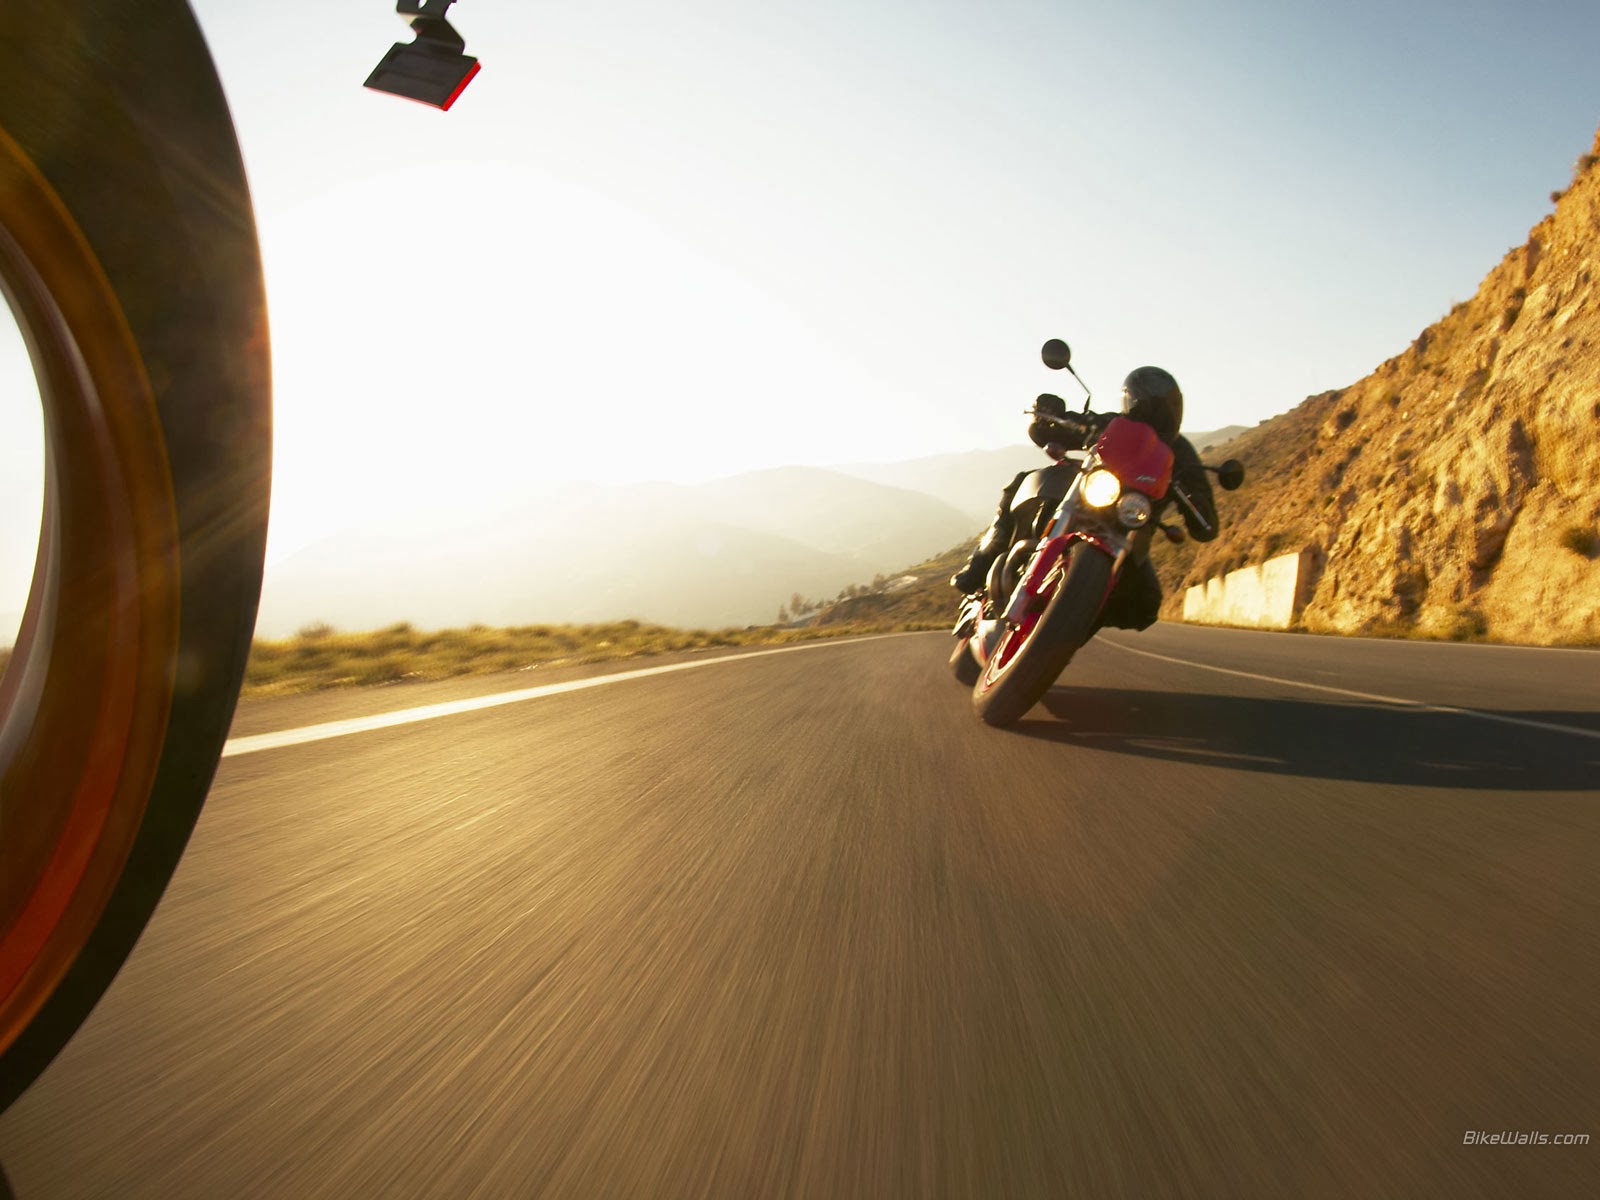 Пользование мотоциклом на дороге. За рулем мотоцикла. Мотоцикл на шоссе. Байк на шоссе. Мотоцикл для путешествий.